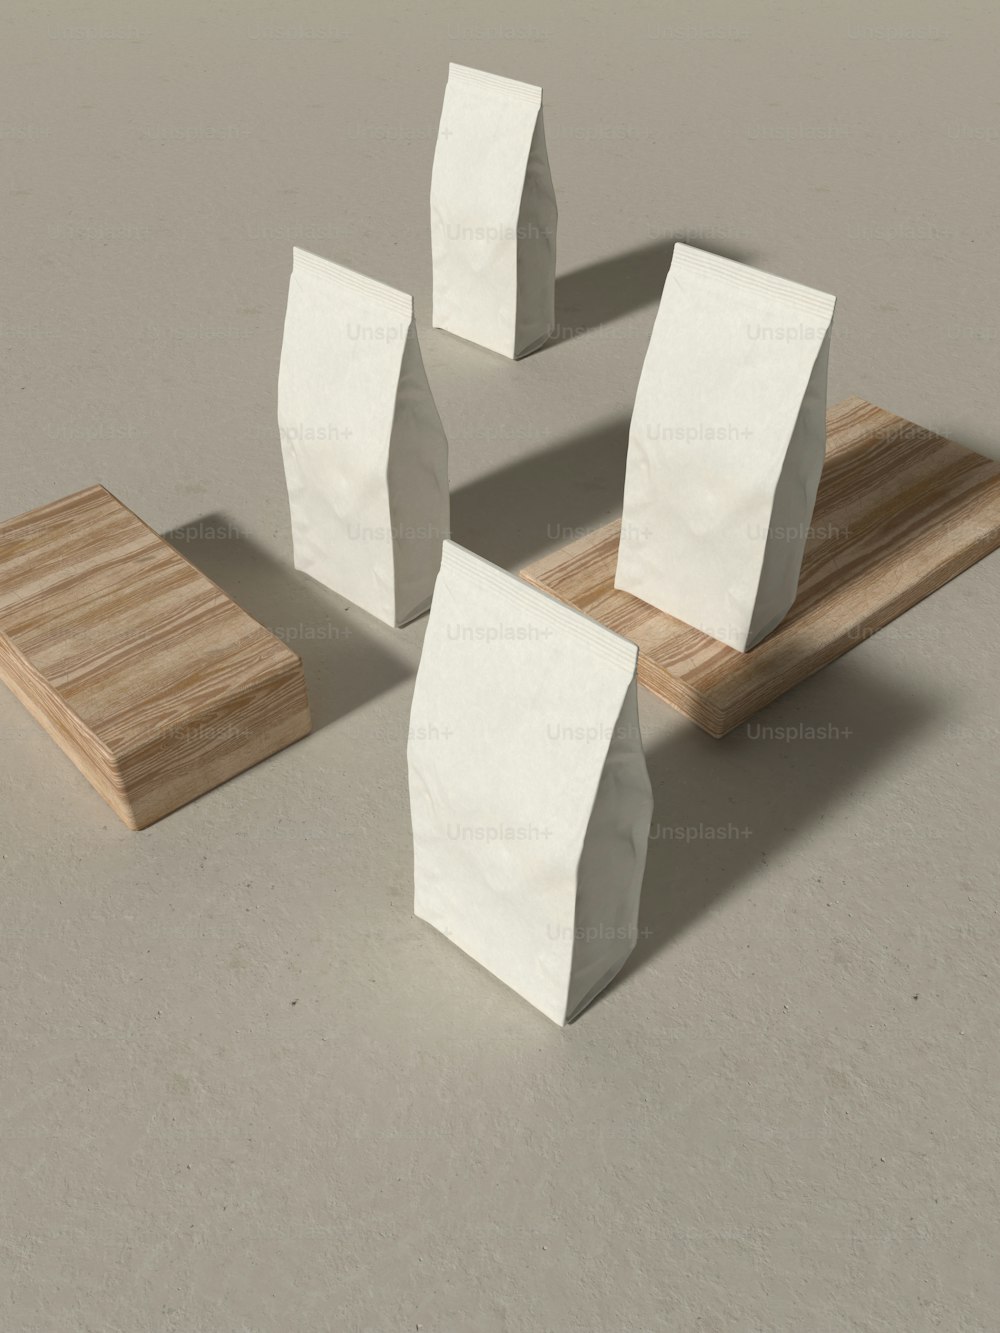 quatre morceaux de papier posés sur une planche à découper en bois